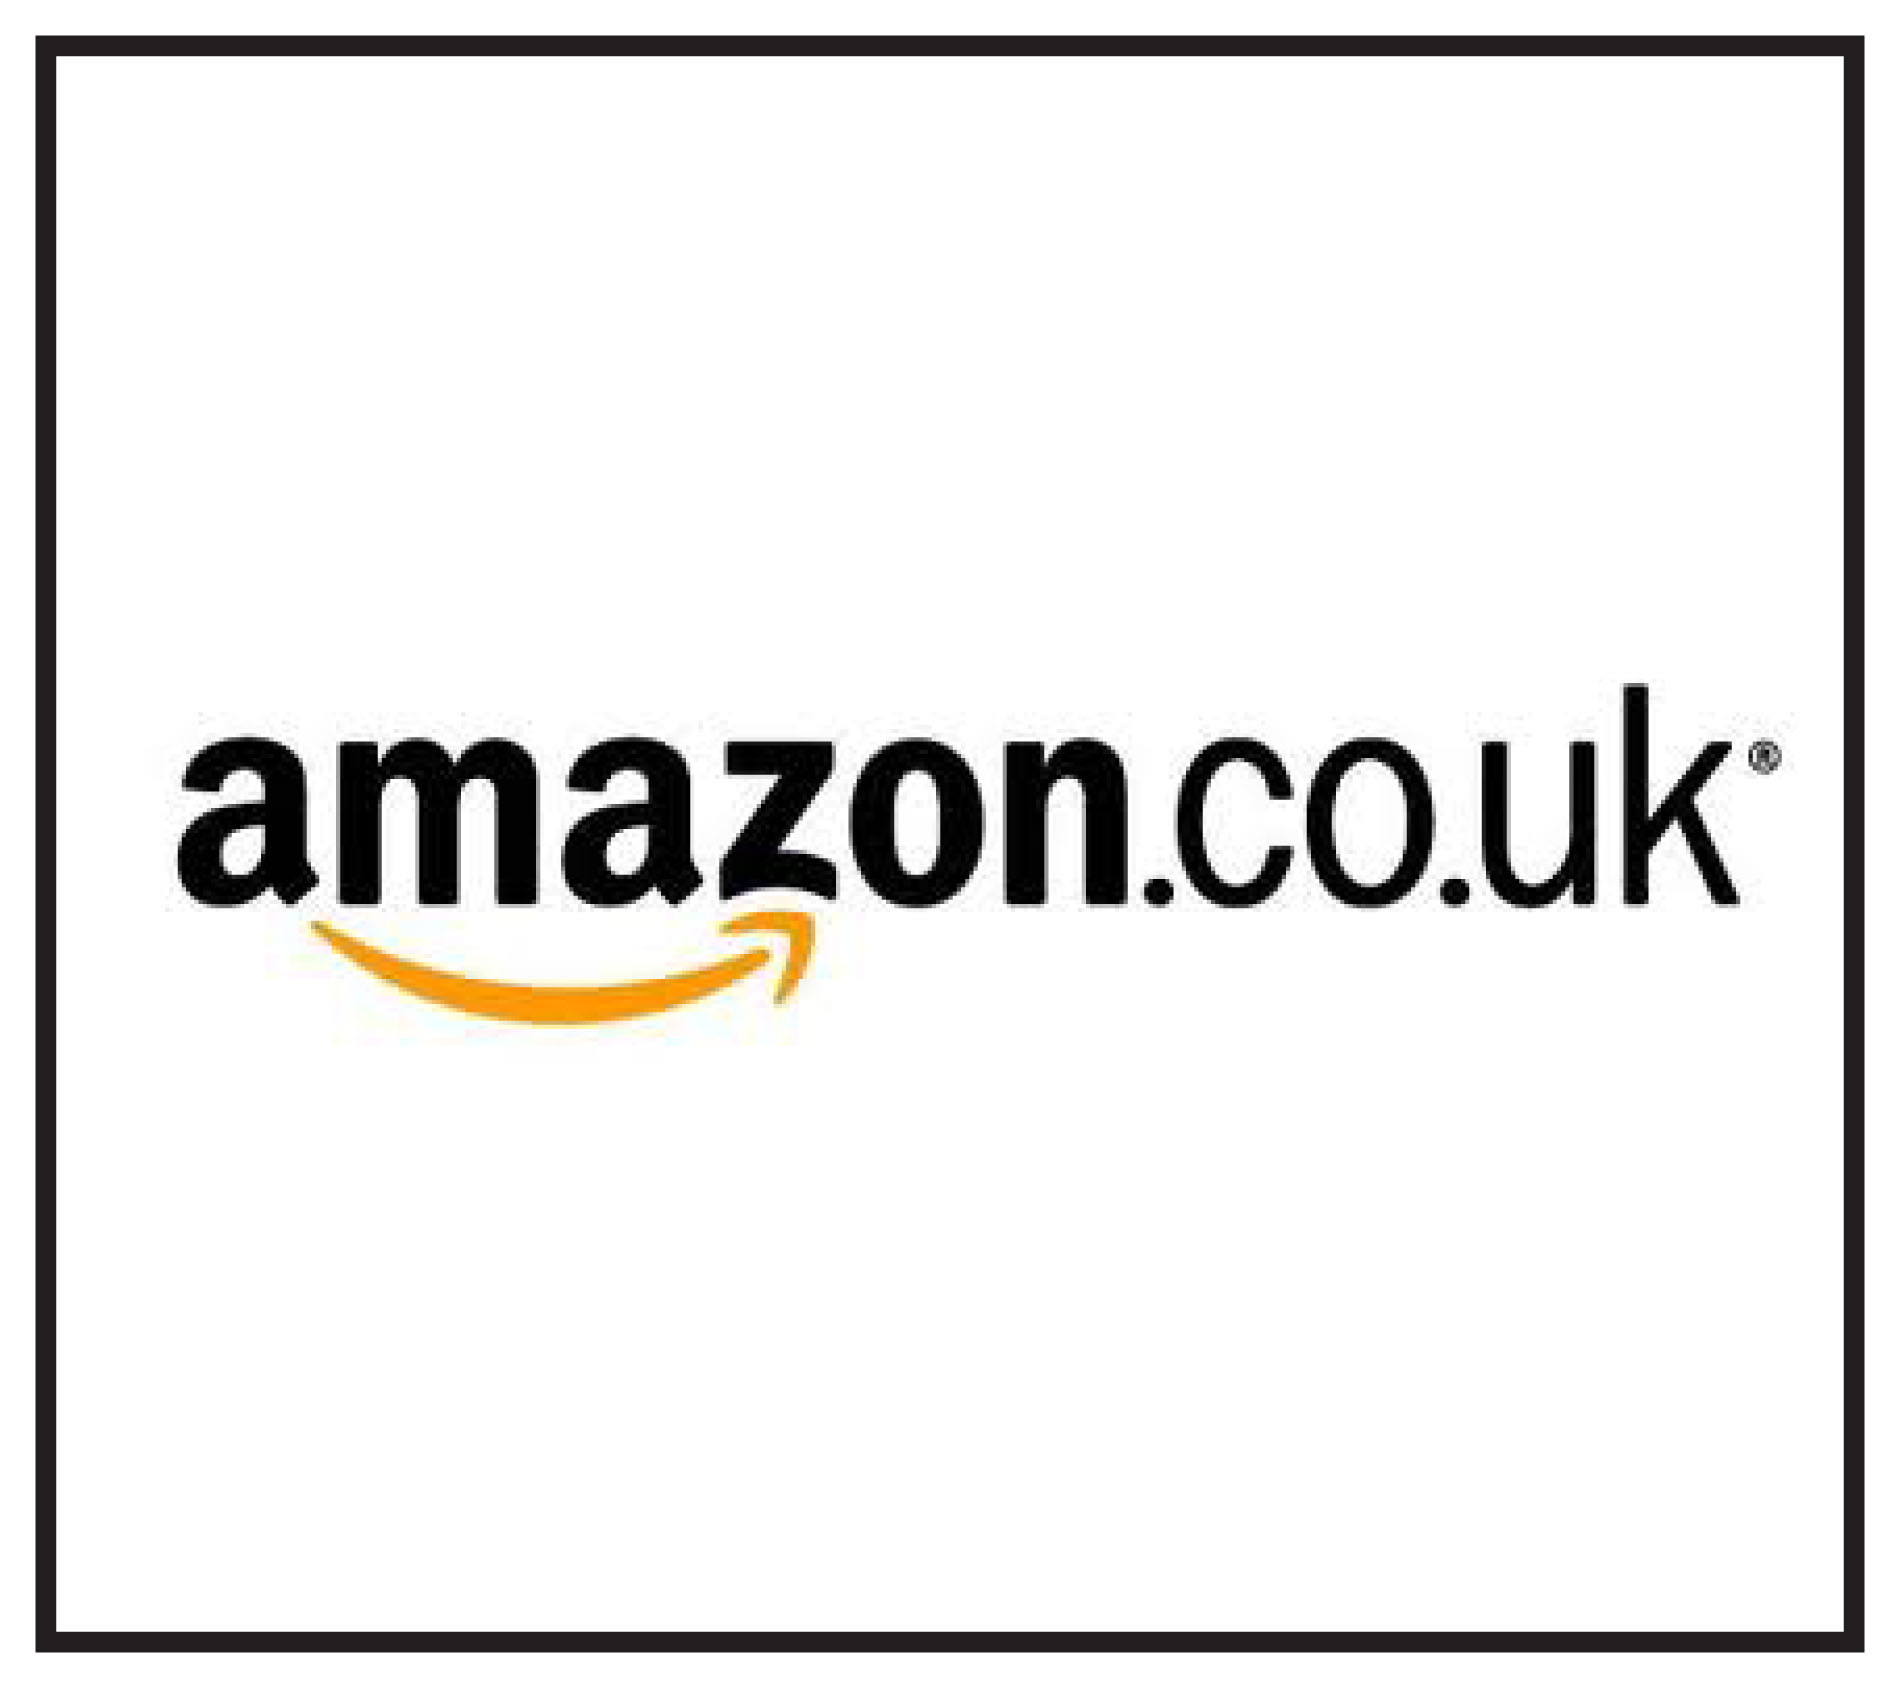 Livrare gratuita pentru comenzile pe Amazon UK